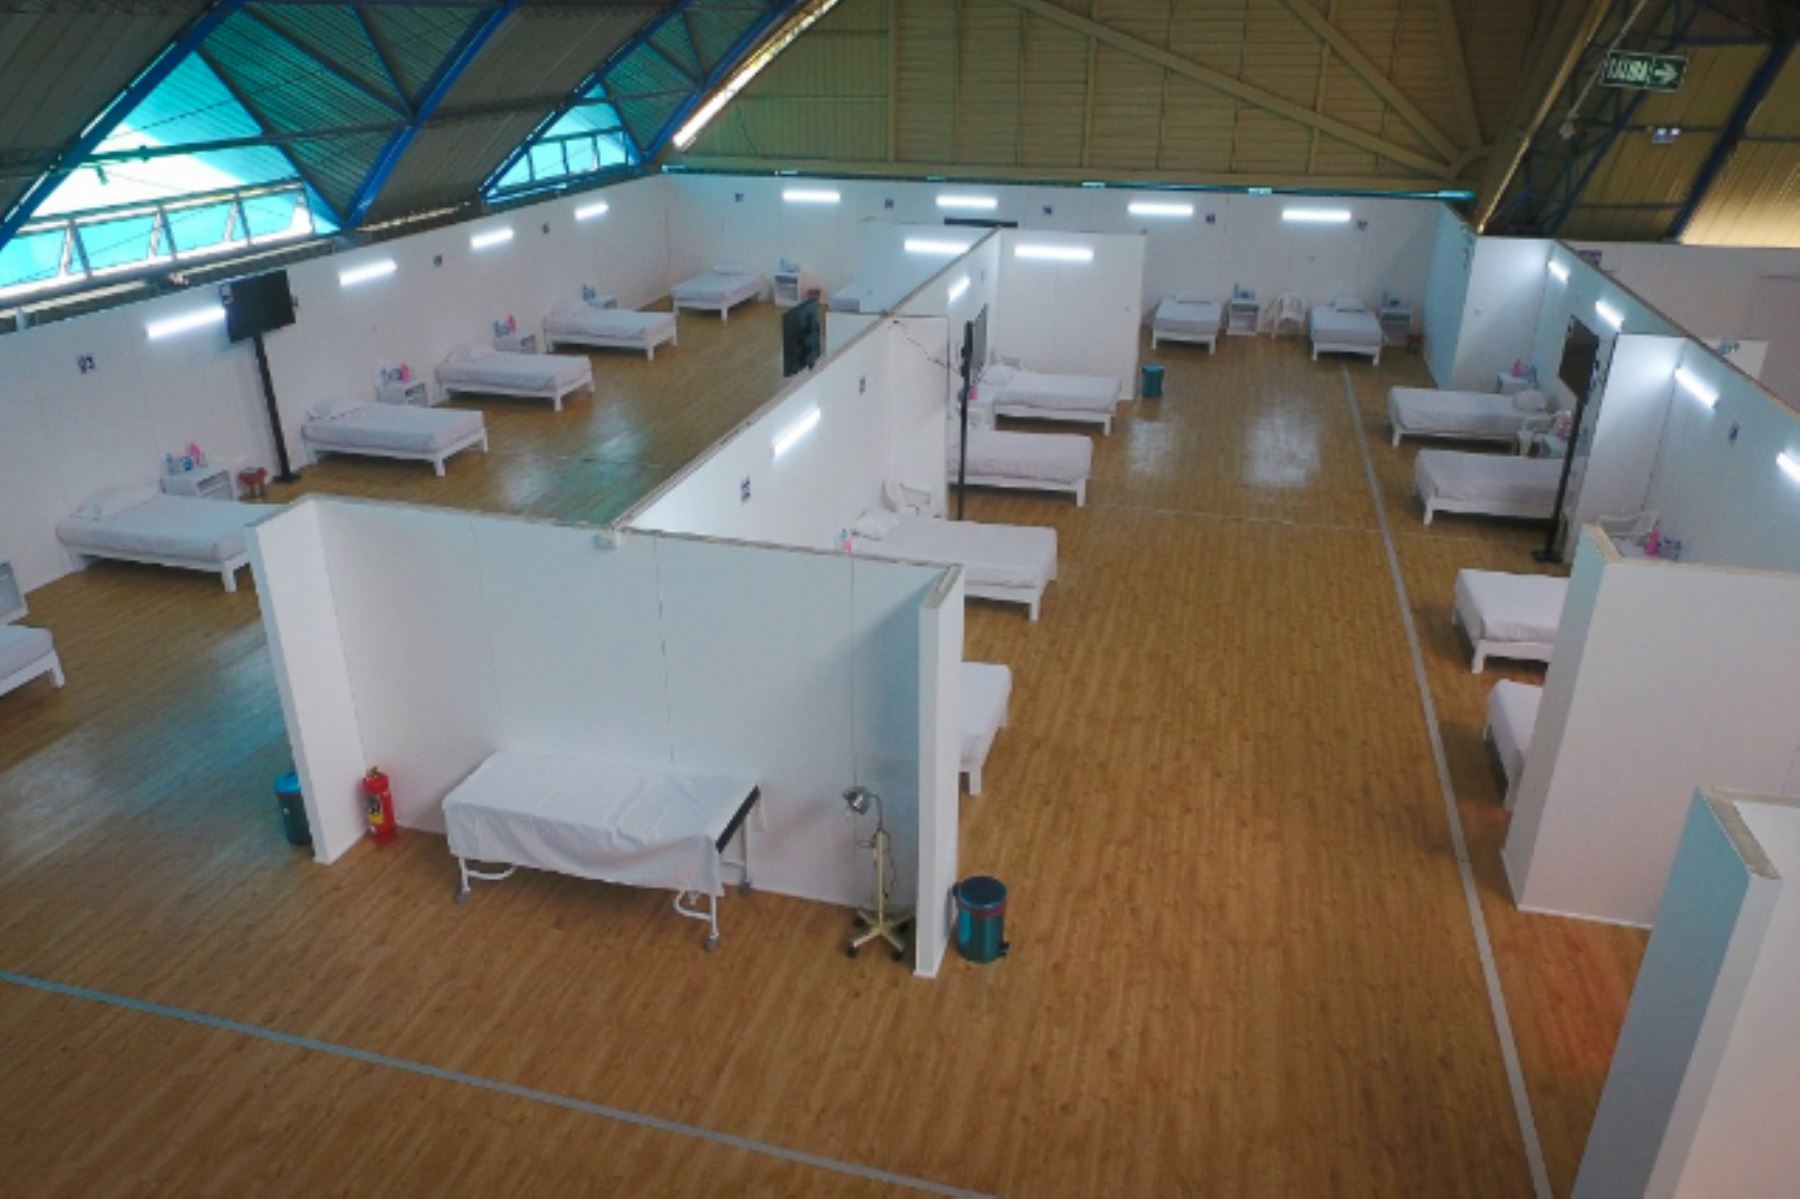 La región Arequipa cuenta desde hoy con Centro de Atención y Aislamiento Covid-19 para pacientes leves.